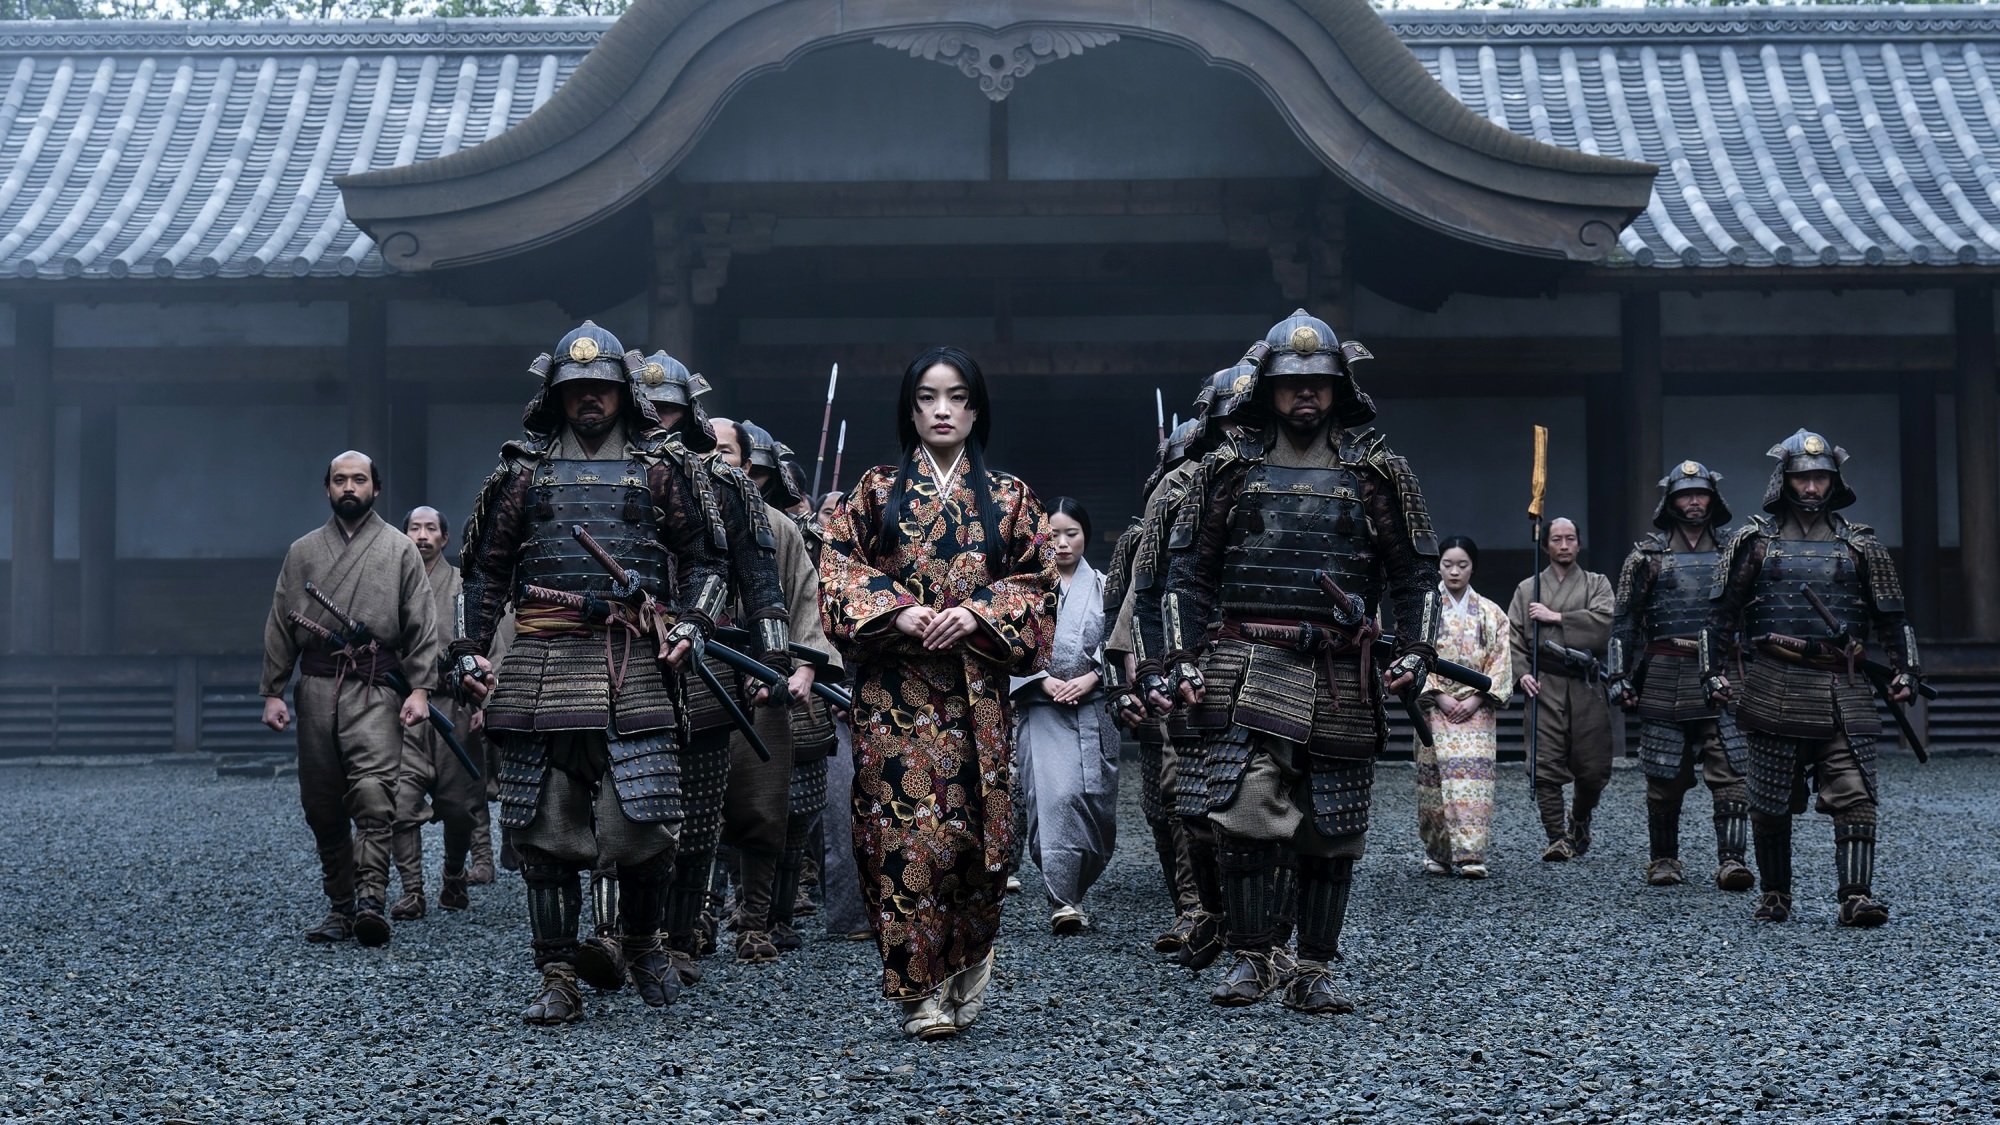 Mariko du « Shōgun » marchant avec sa suite de soldats.